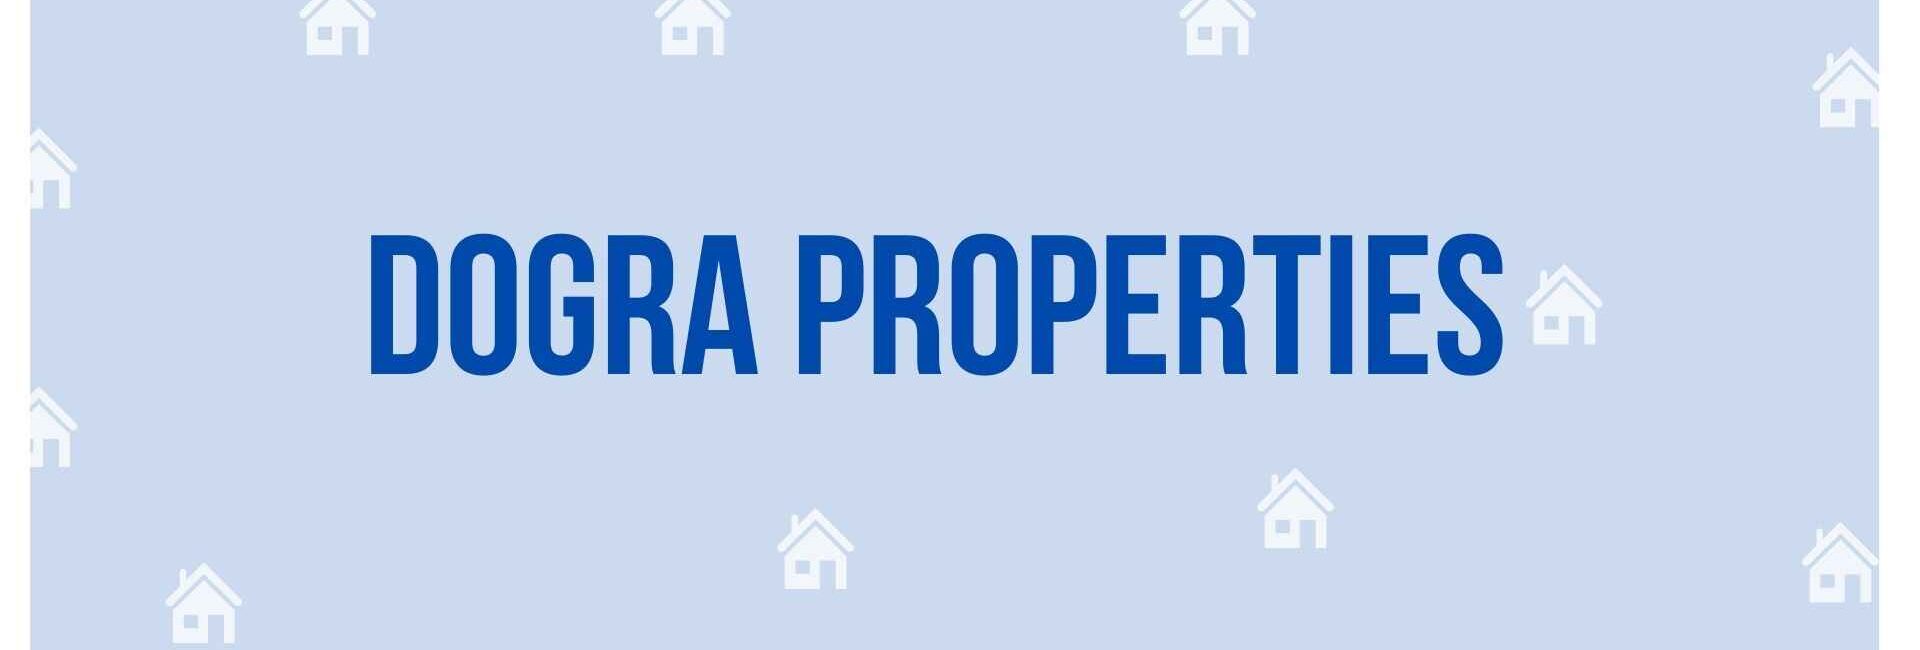 Dogra Properties - Property Dealer in Noida